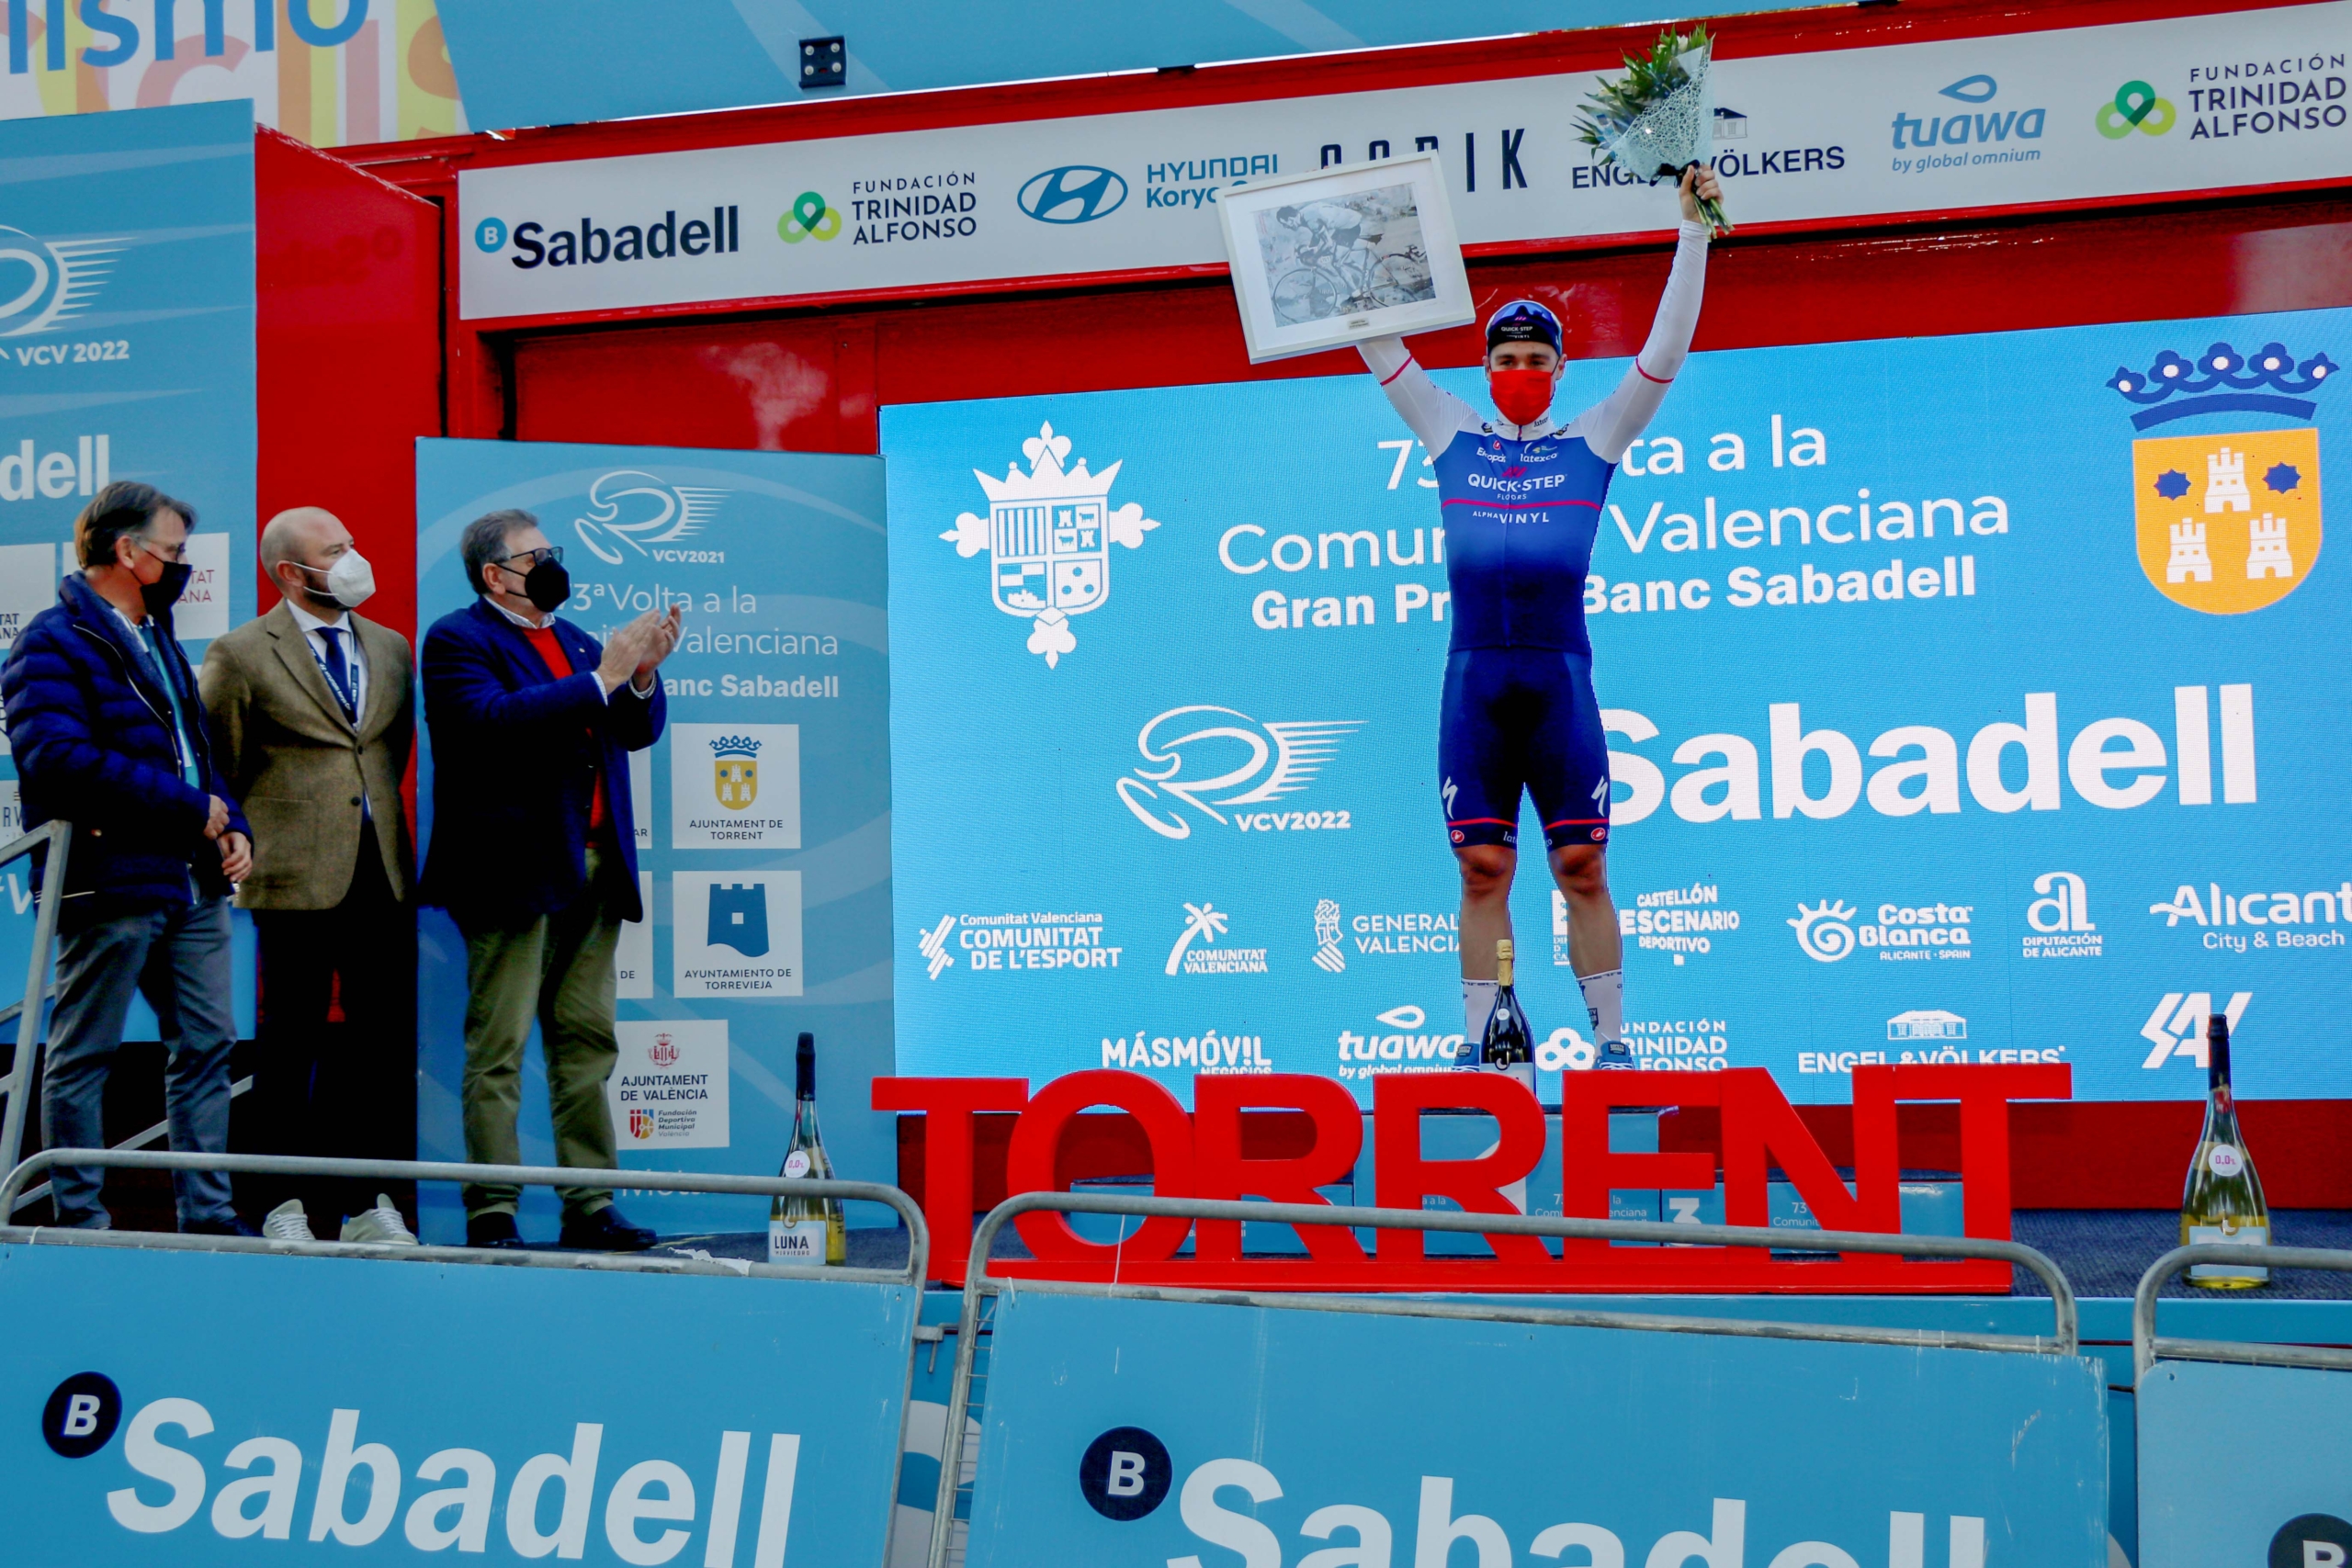 La segona etapa de la Volta Ciclista a la Comunitat Valenciana culmina a Torrent